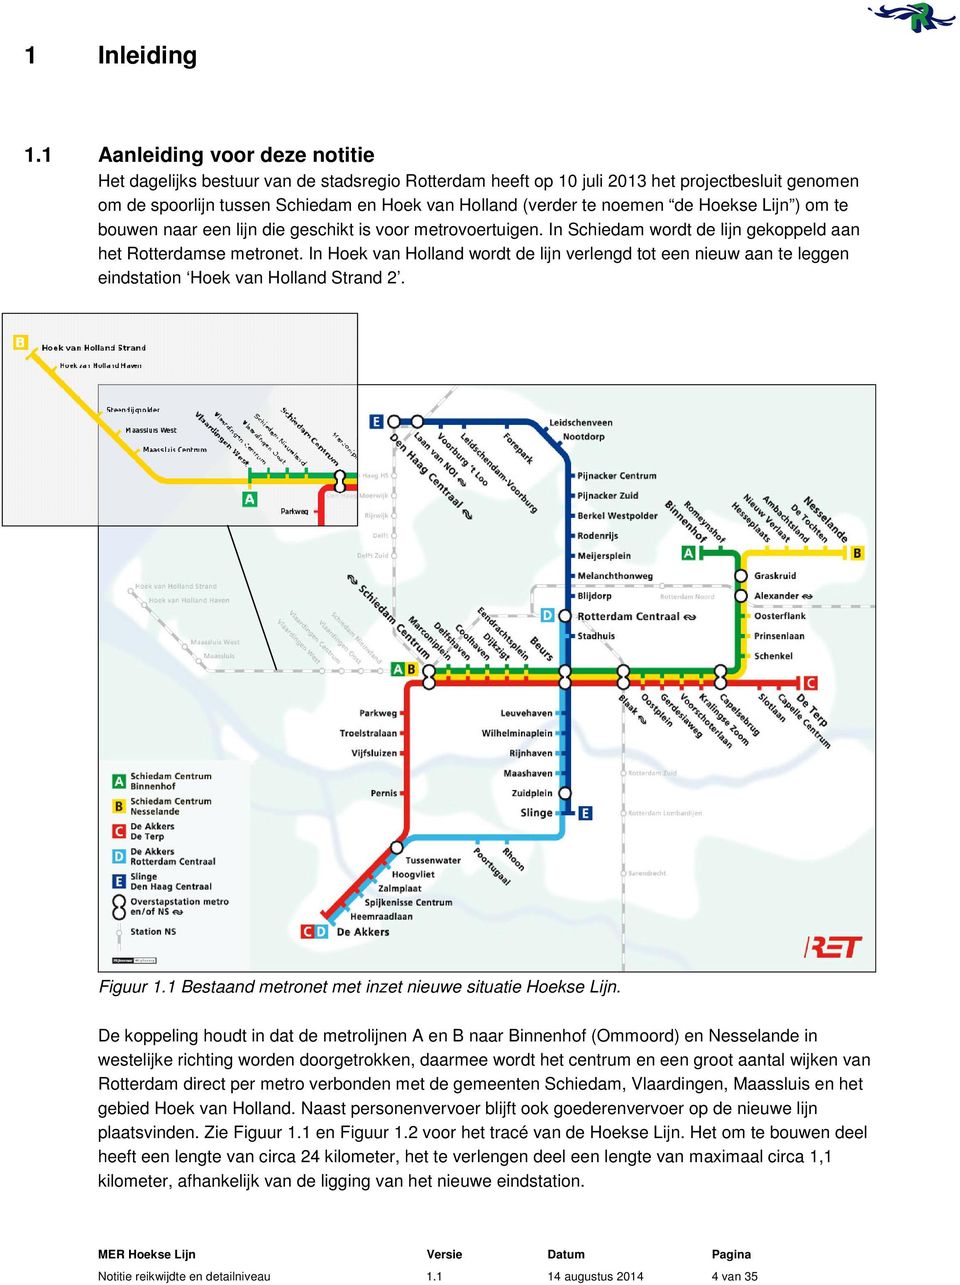 de Hoekse Lijn ) om te bouwen naar een lijn die geschikt is voor metrovoertuigen. In Schiedam wordt de lijn gekoppeld aan het Rotterdamse metronet.